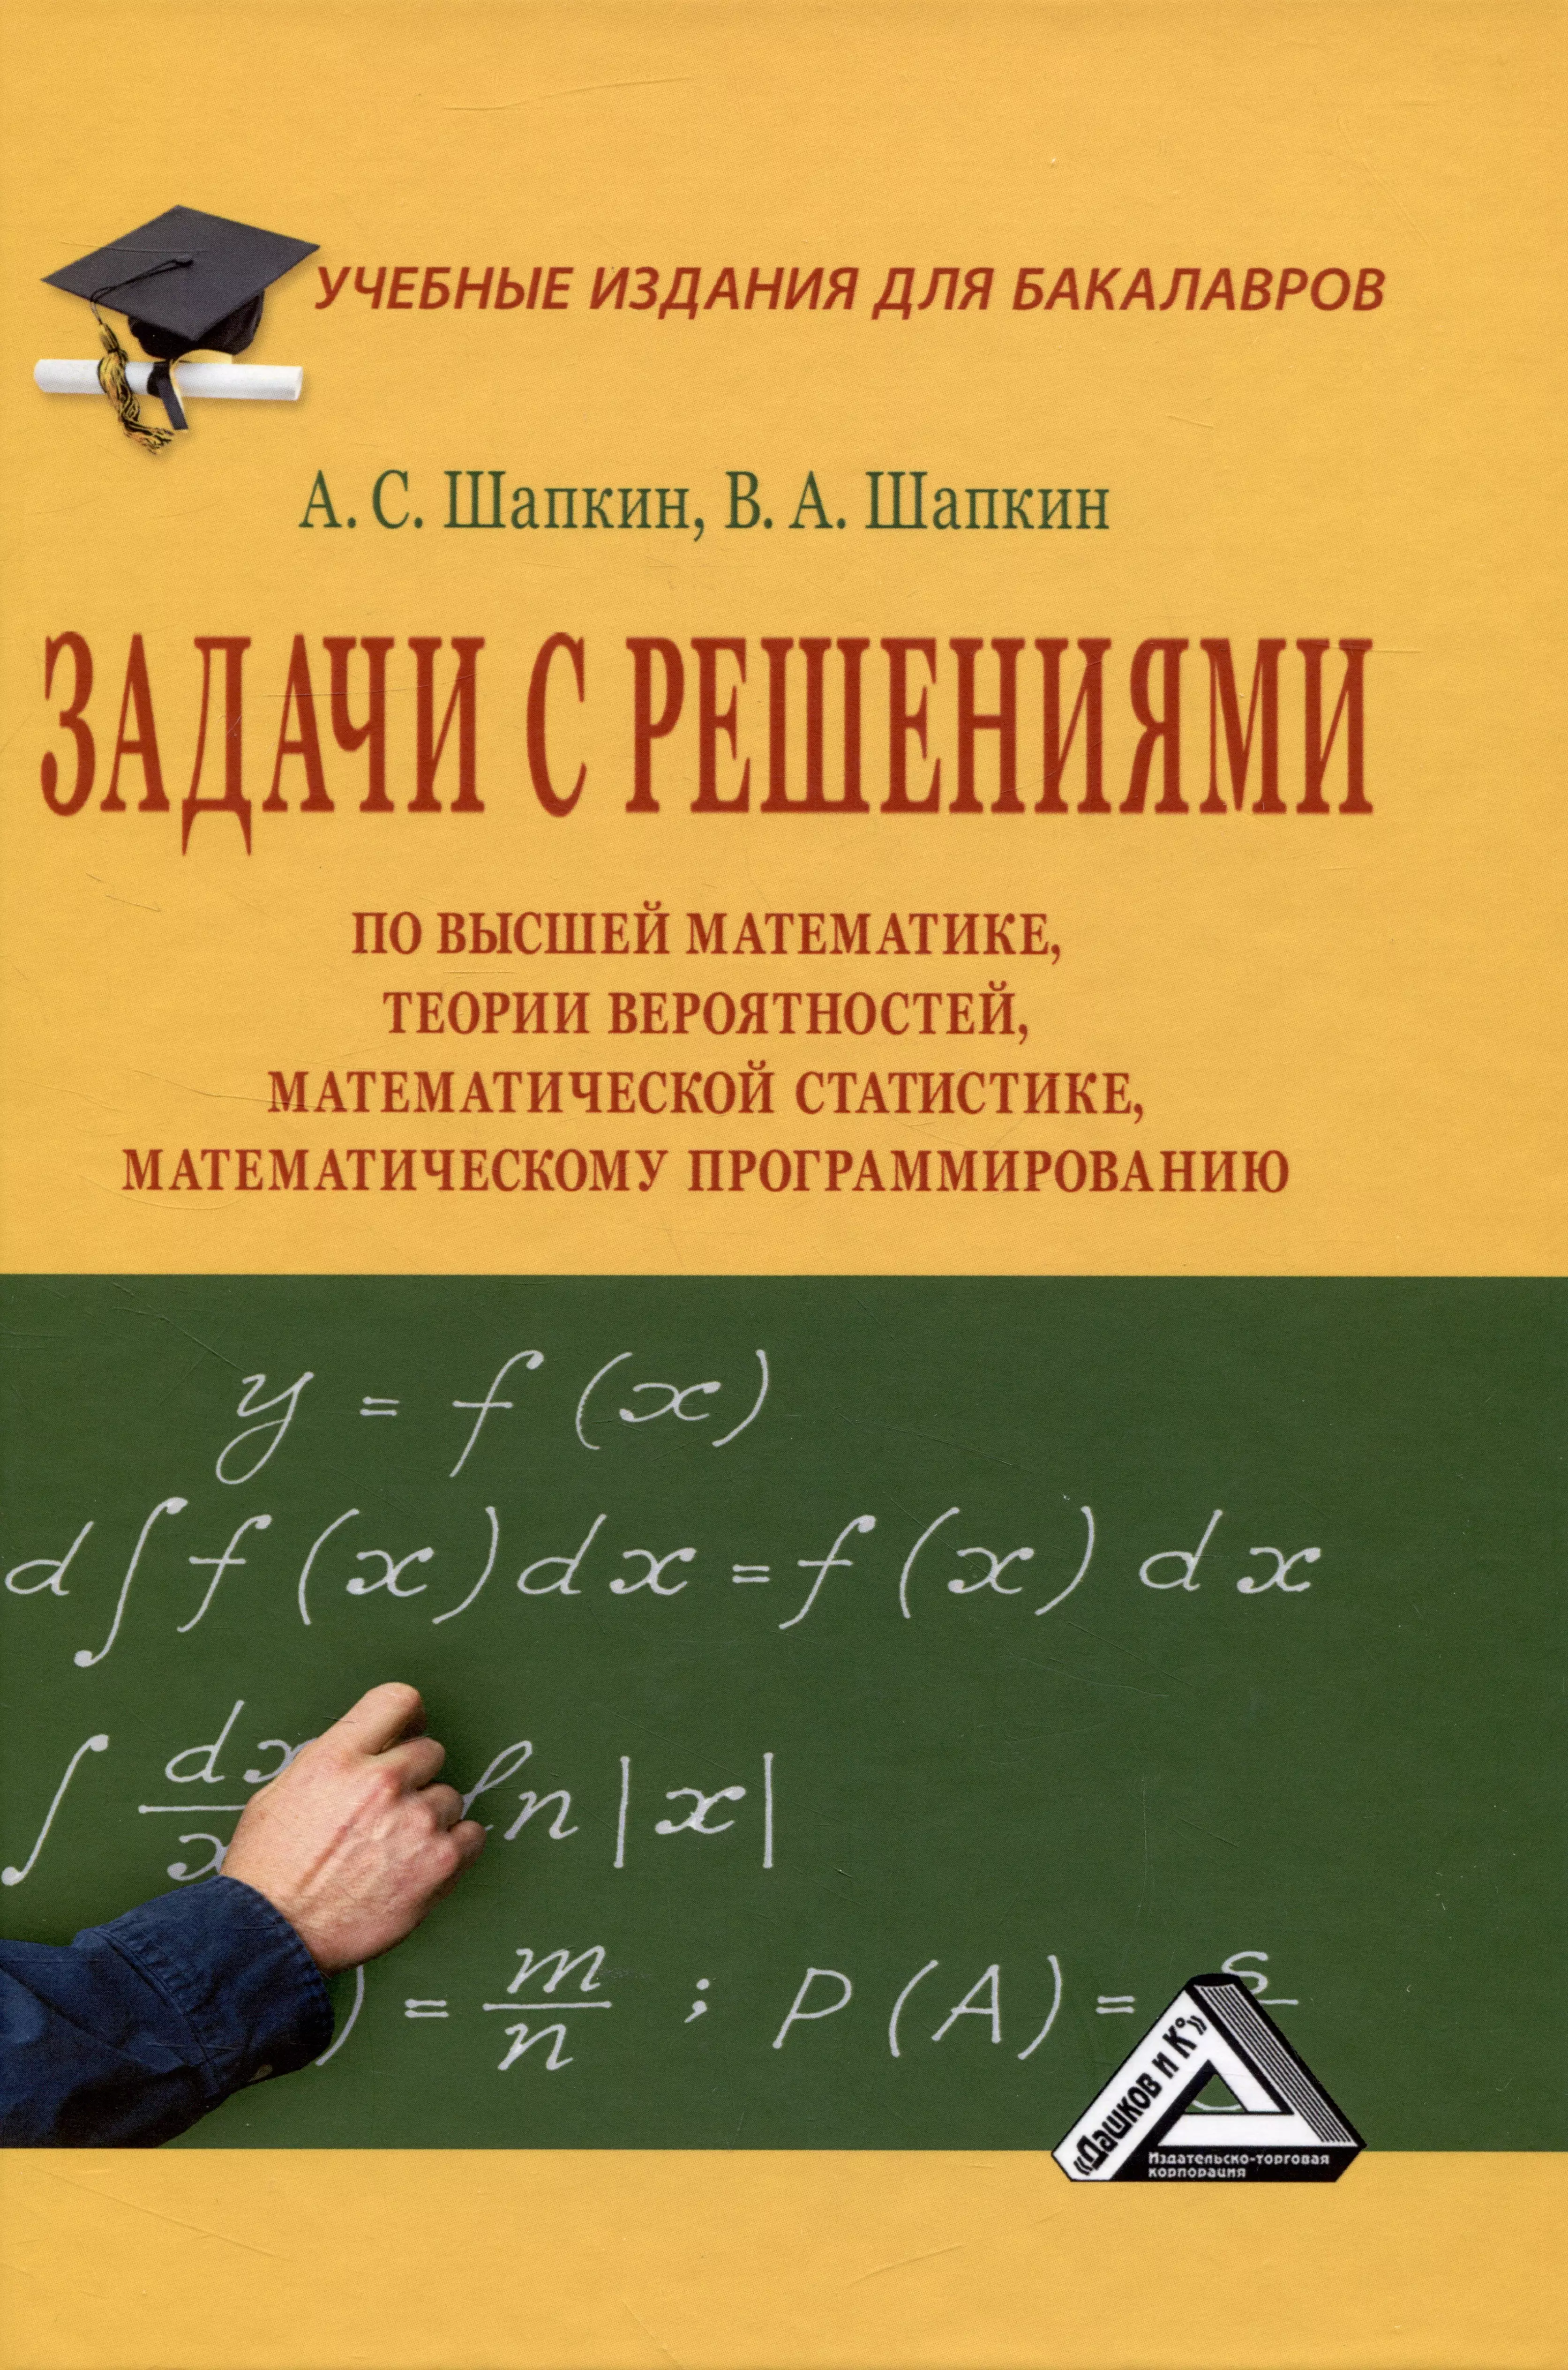 Задачи с решениями по высшей математике, теории вероятностей, математической статистике, математическому программированию: Учебное пособие для бакалавров